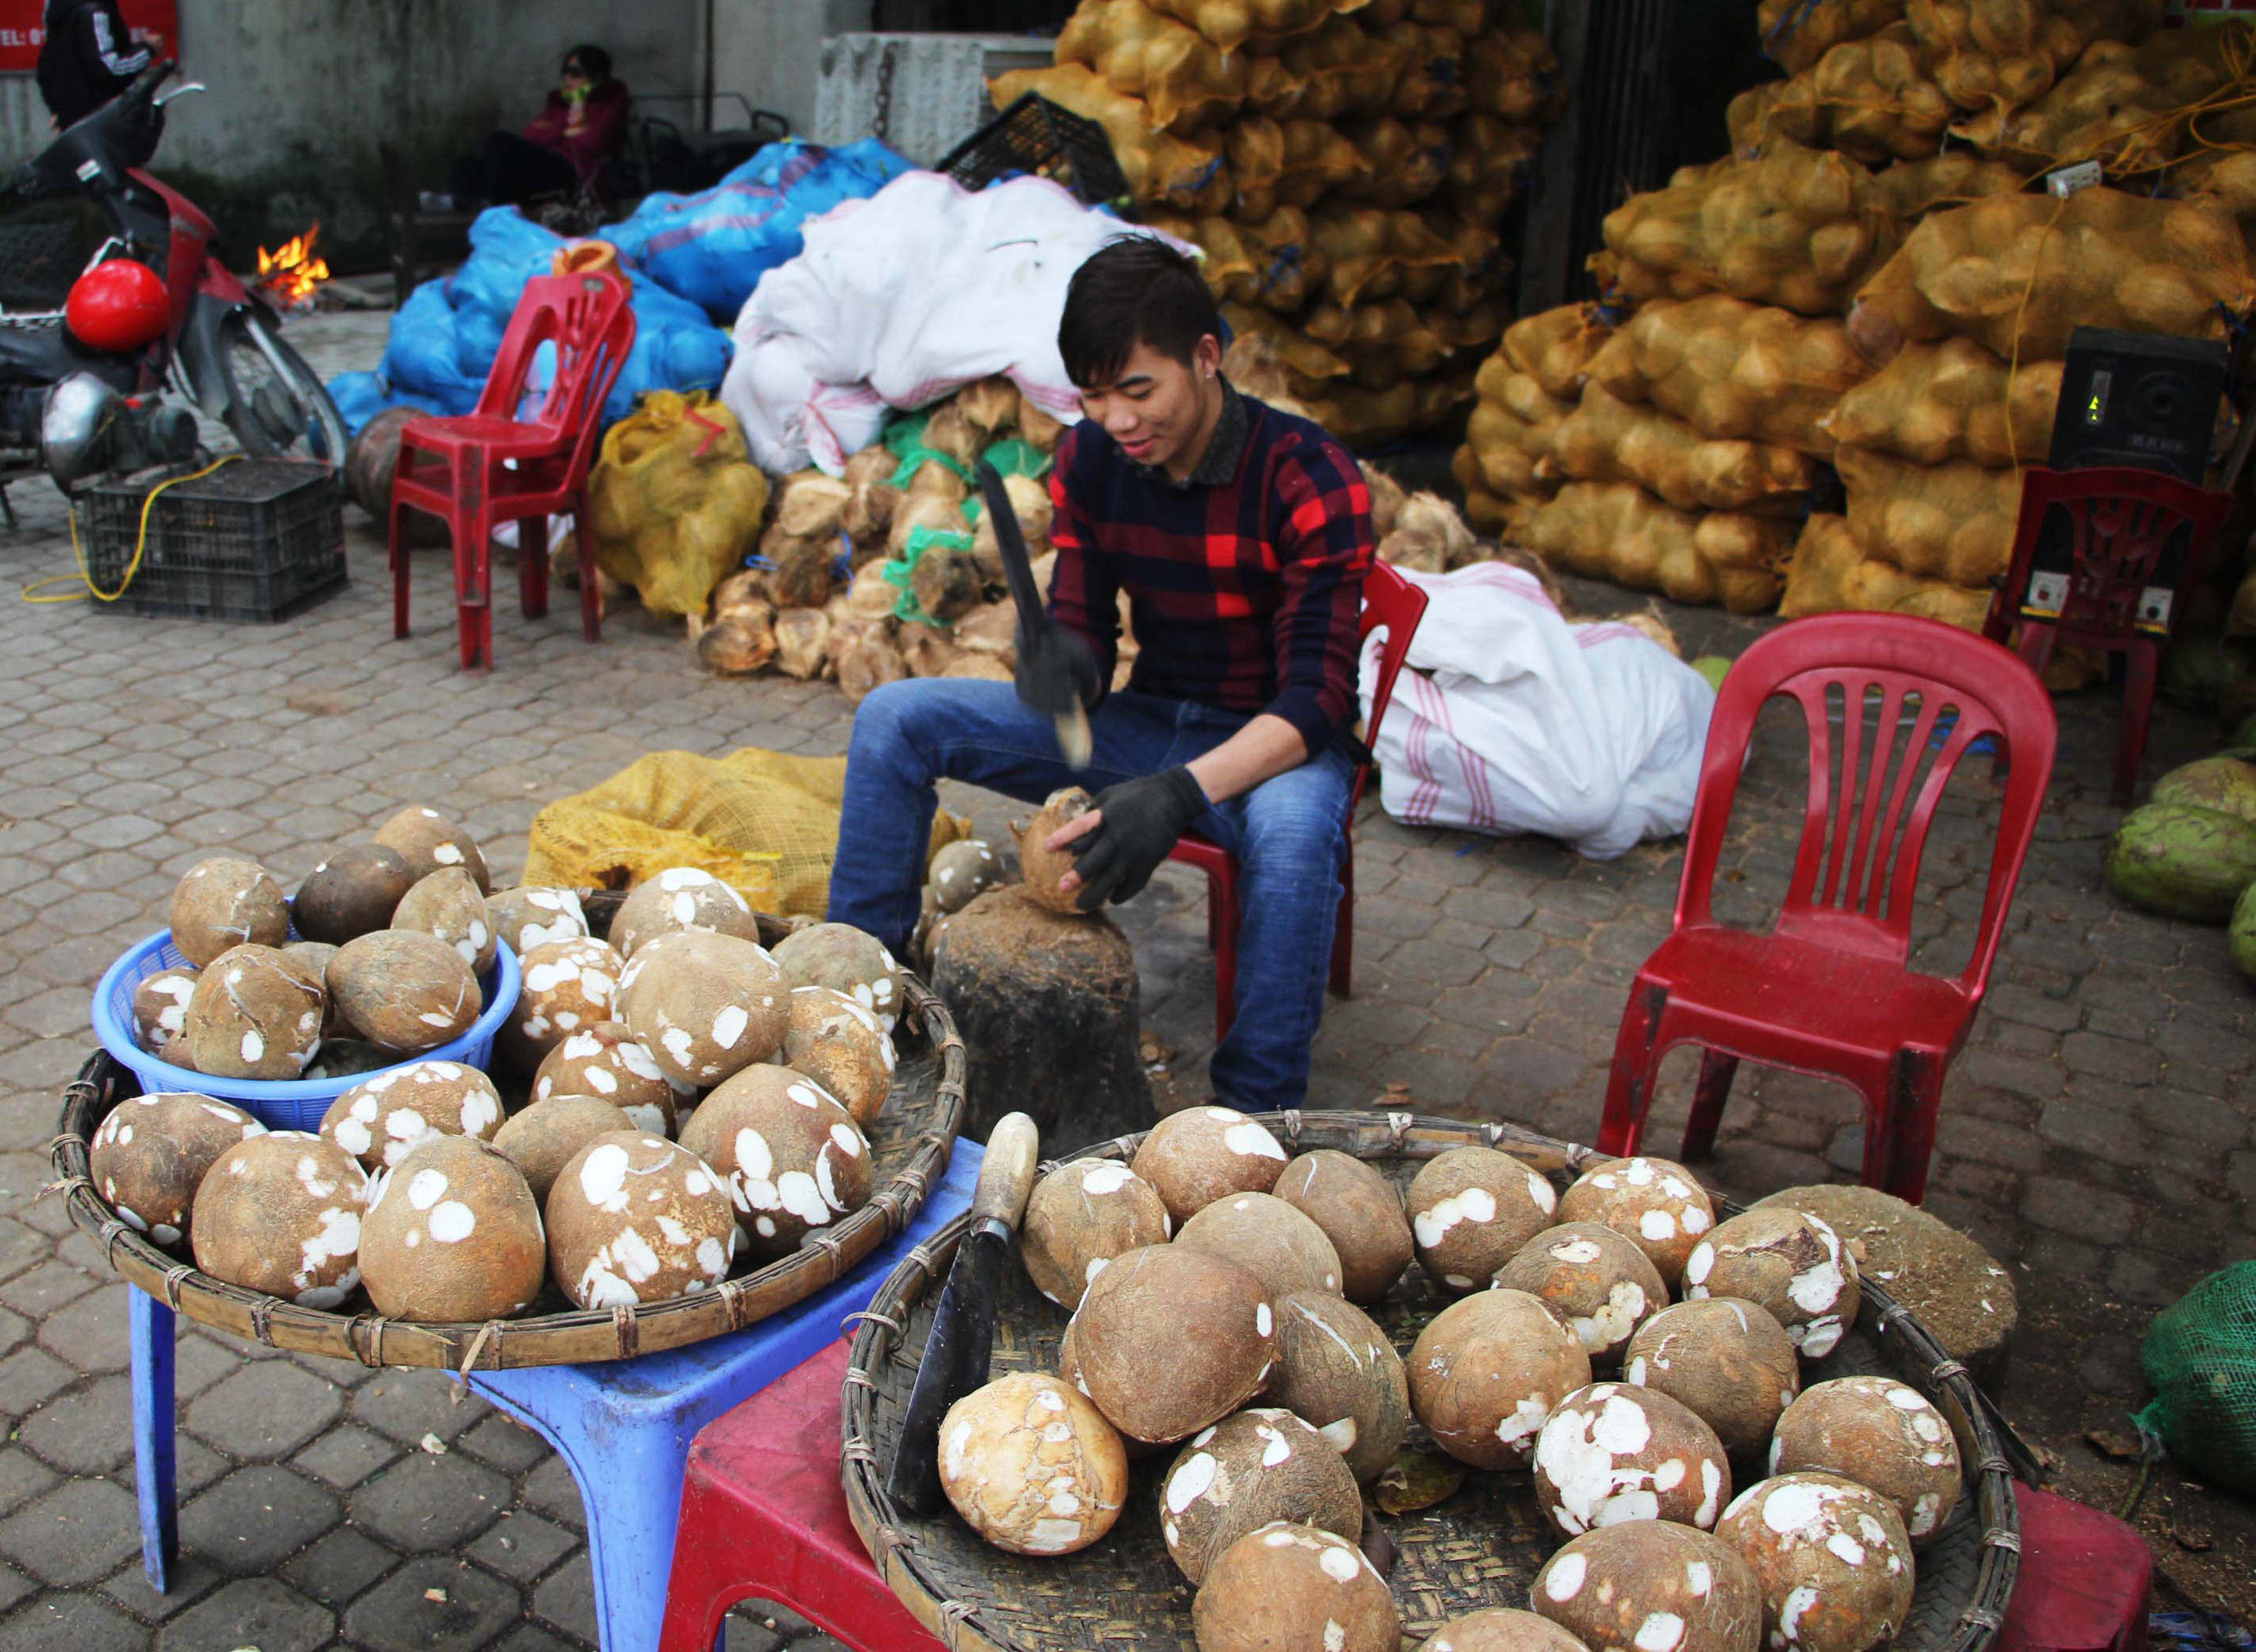 Hiện dừa được tiêu thụ mạnh dịp gần Tết nên các chủ hàng cũng tất bật đẽo dừa cho khách. Ảnh: Nam Phúc